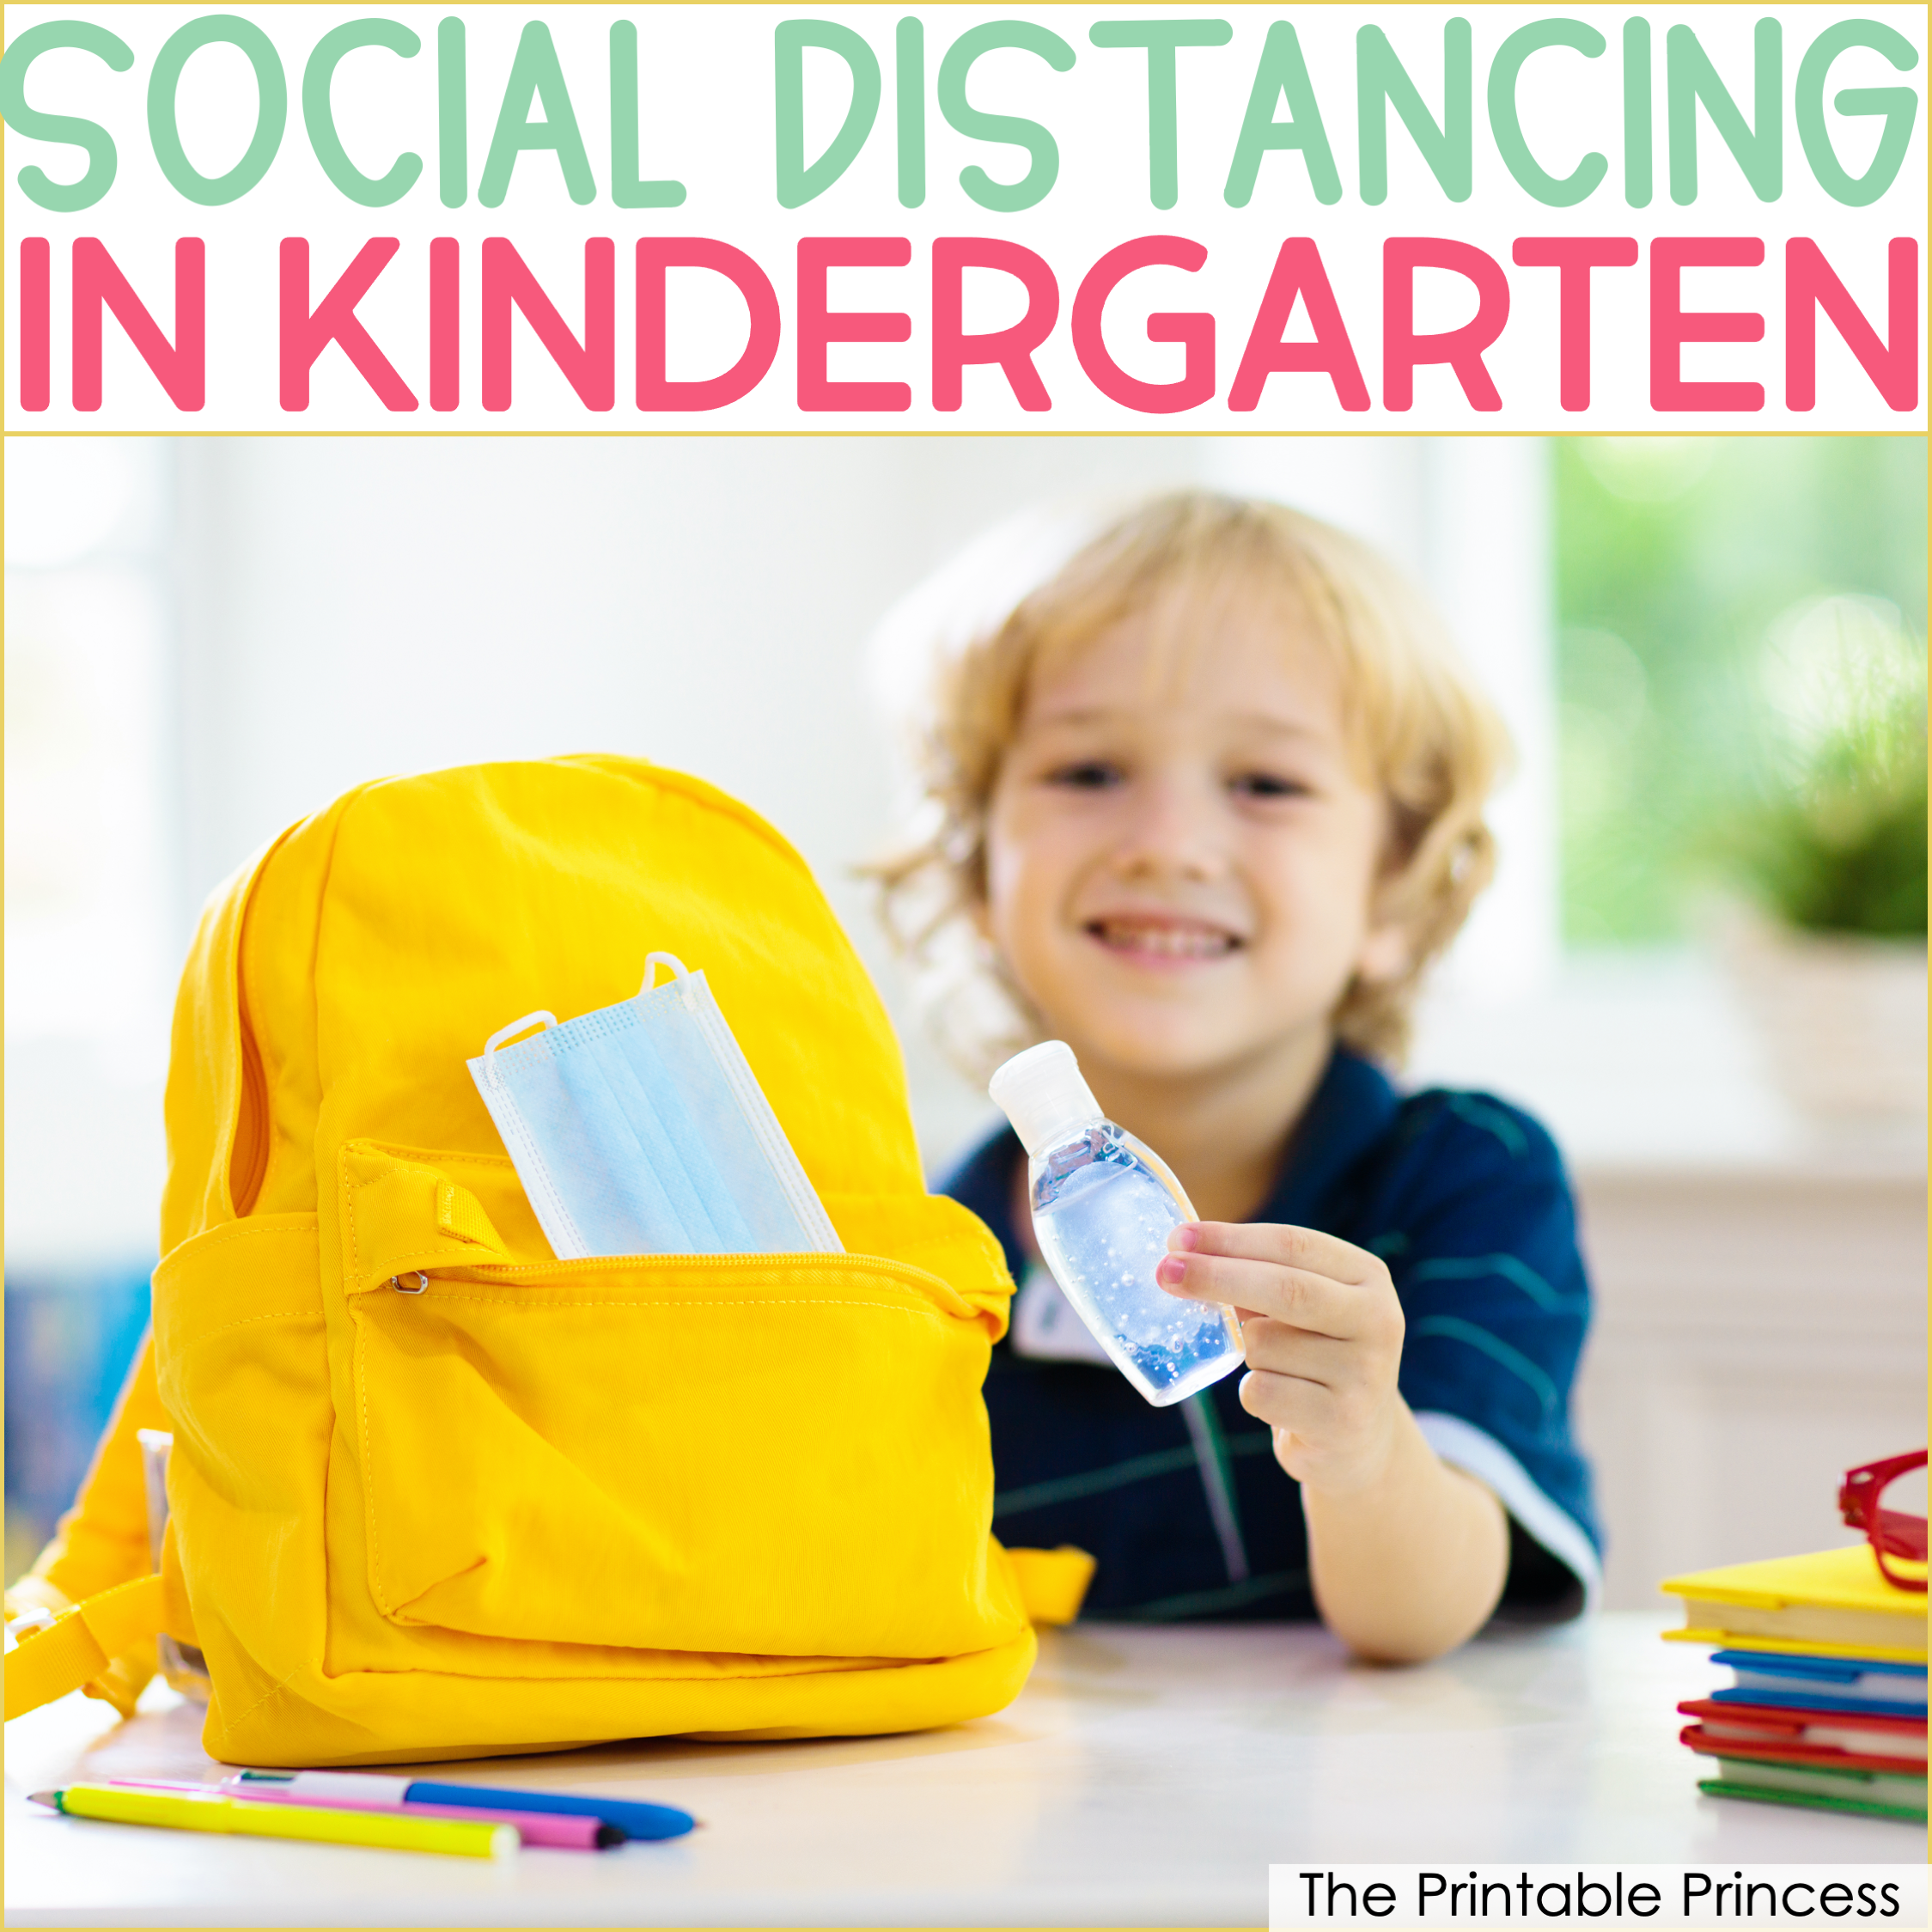 Social Distancing in Kindergarten